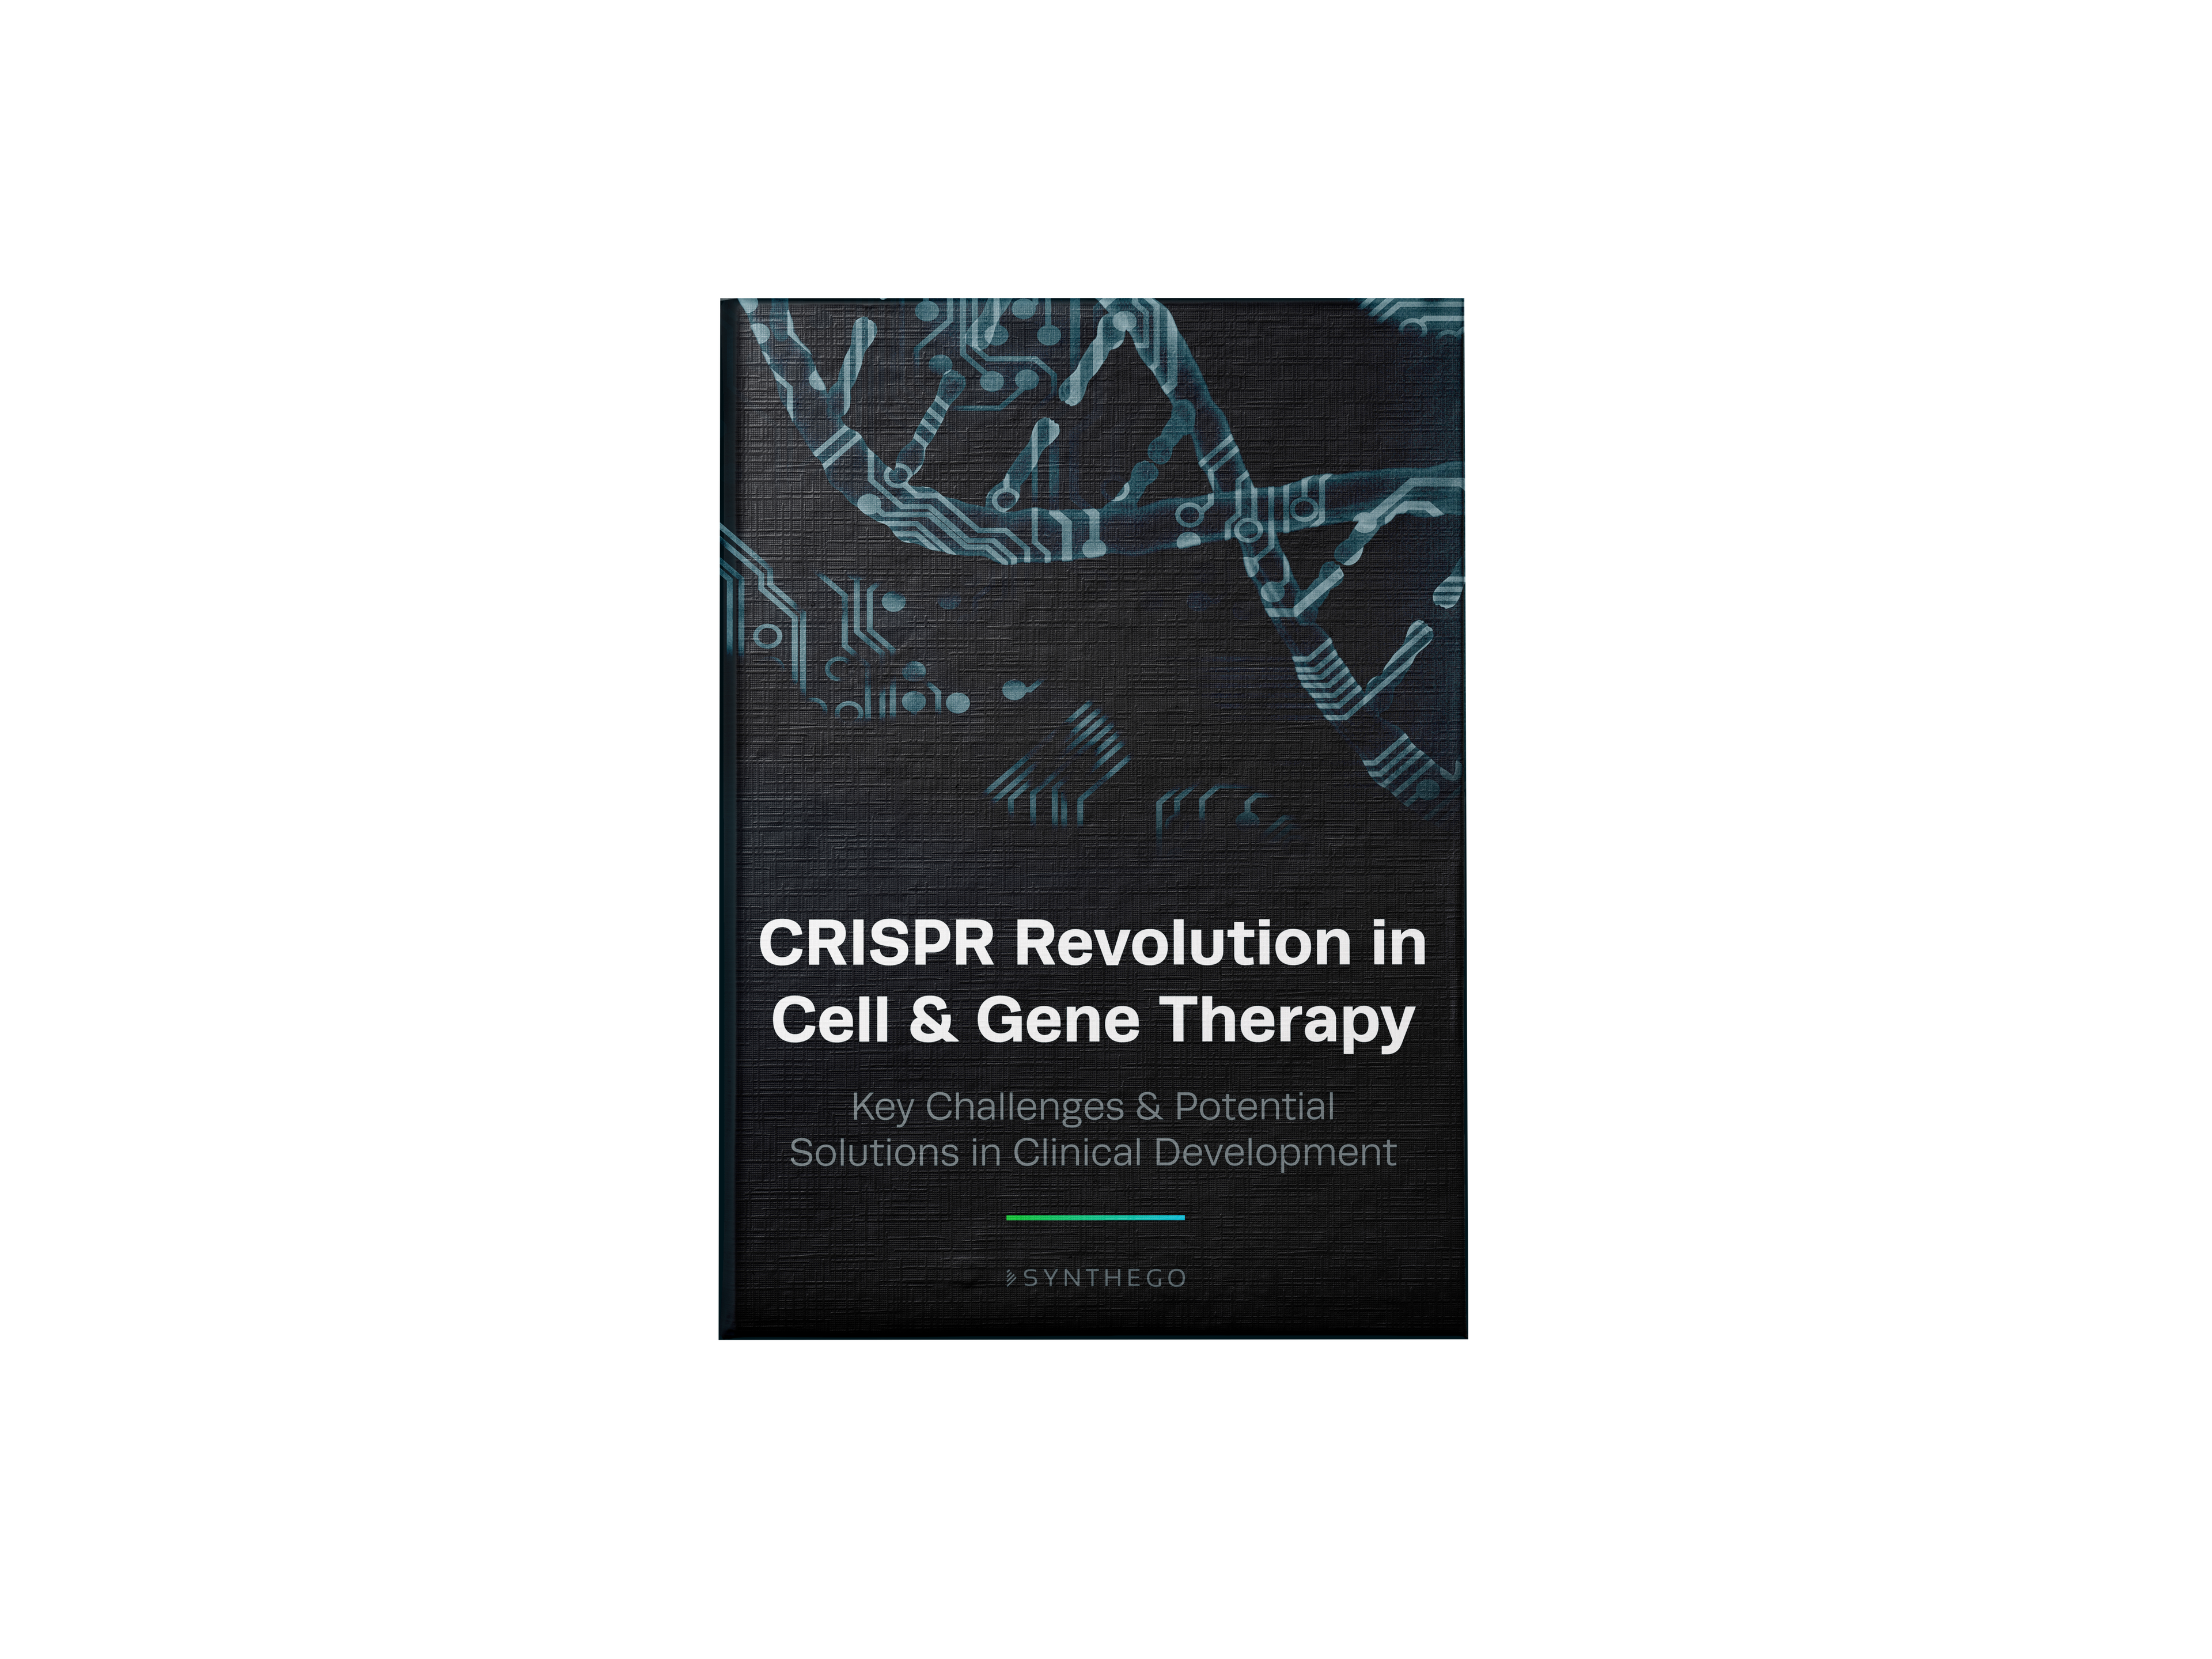 CRISPR Revolution in Cell & Gene Therapy